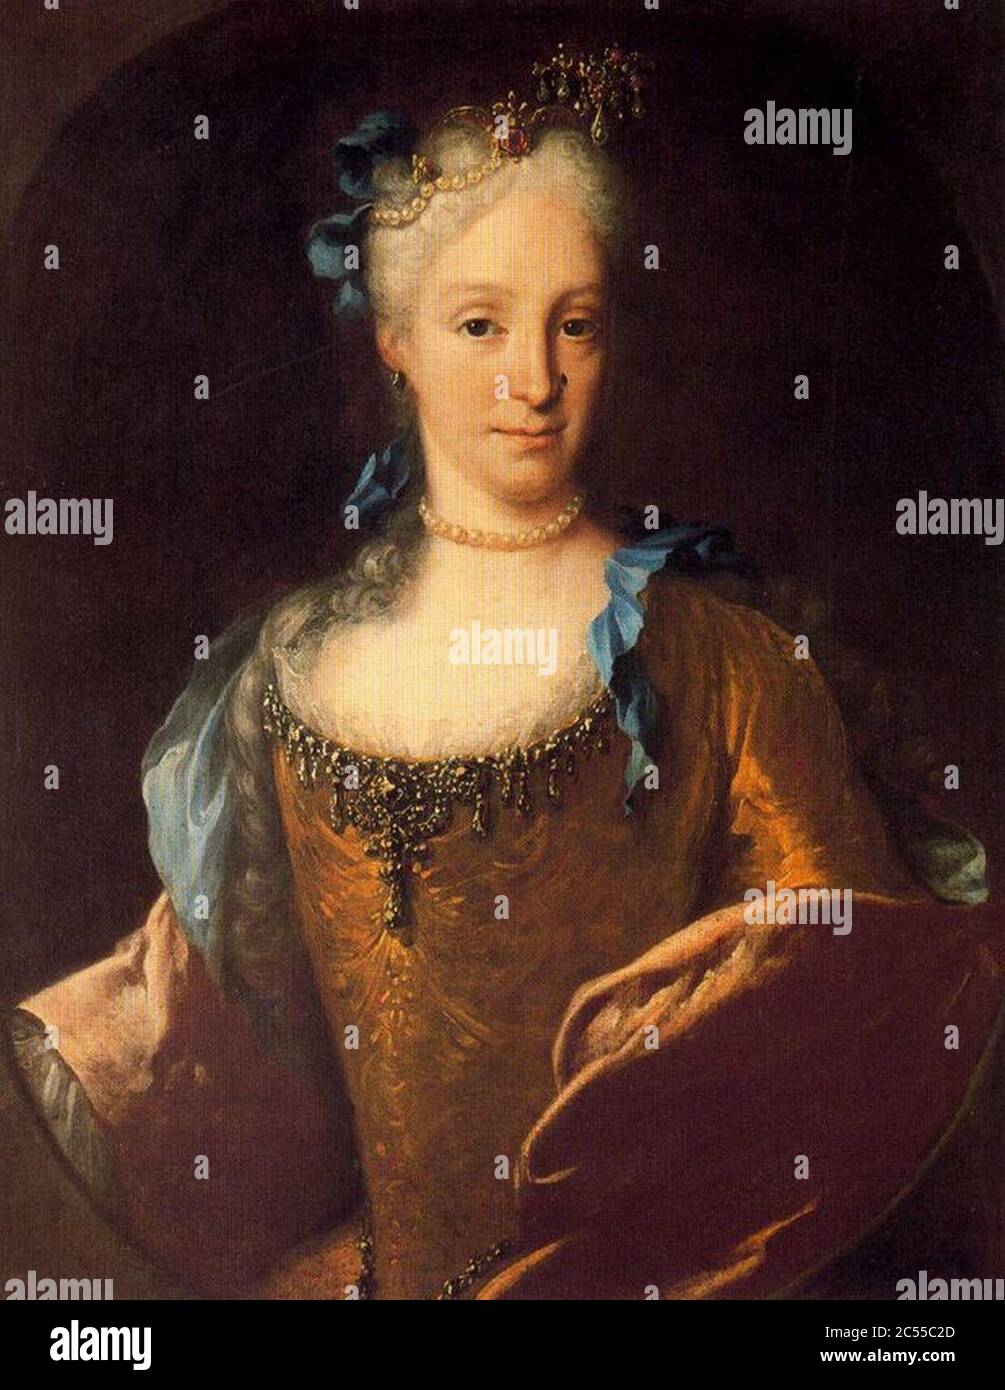 Isabel de Farnesio. Posterior a 1724. Óleo sobre lienzo. 81 x 63 cm. Colección particular. Madrid. Stock Photo